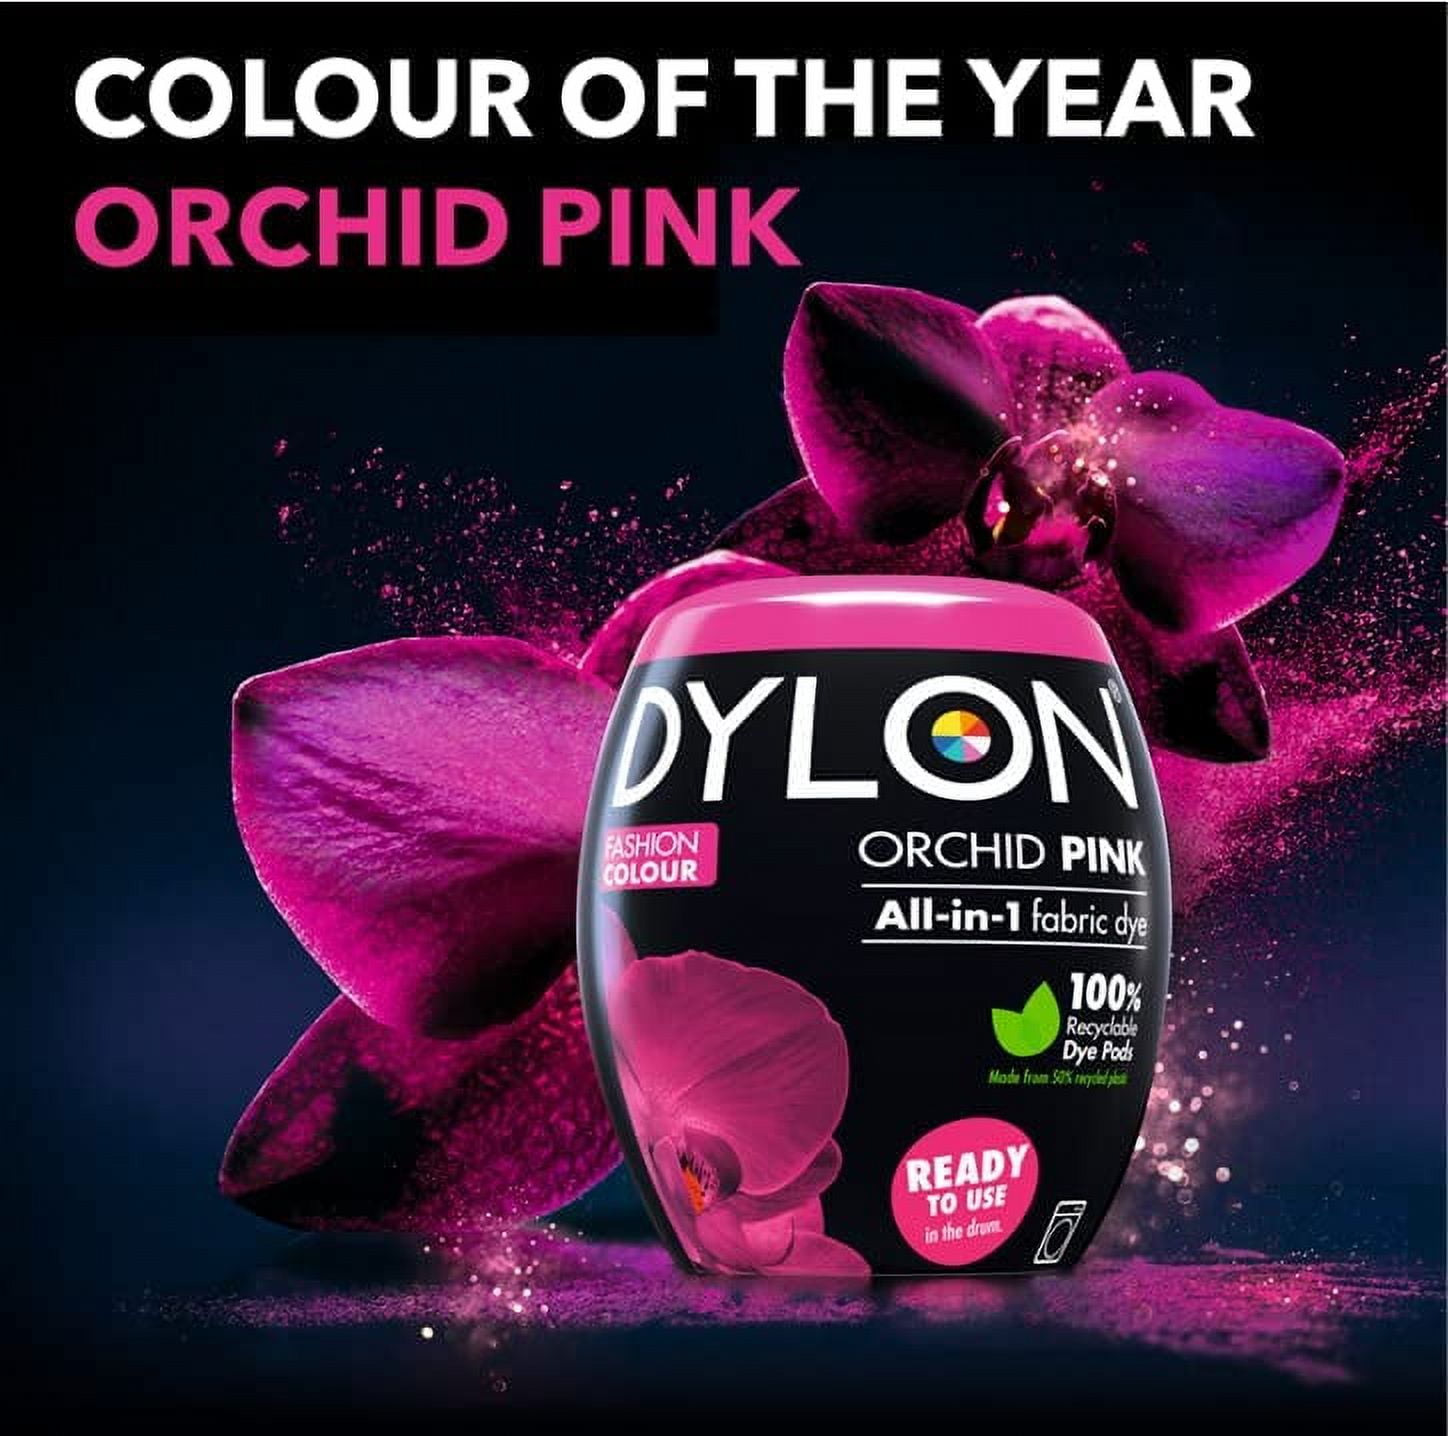 Dylon Machine Fabric Dye (350g) - Choose Colour - w Free Salt